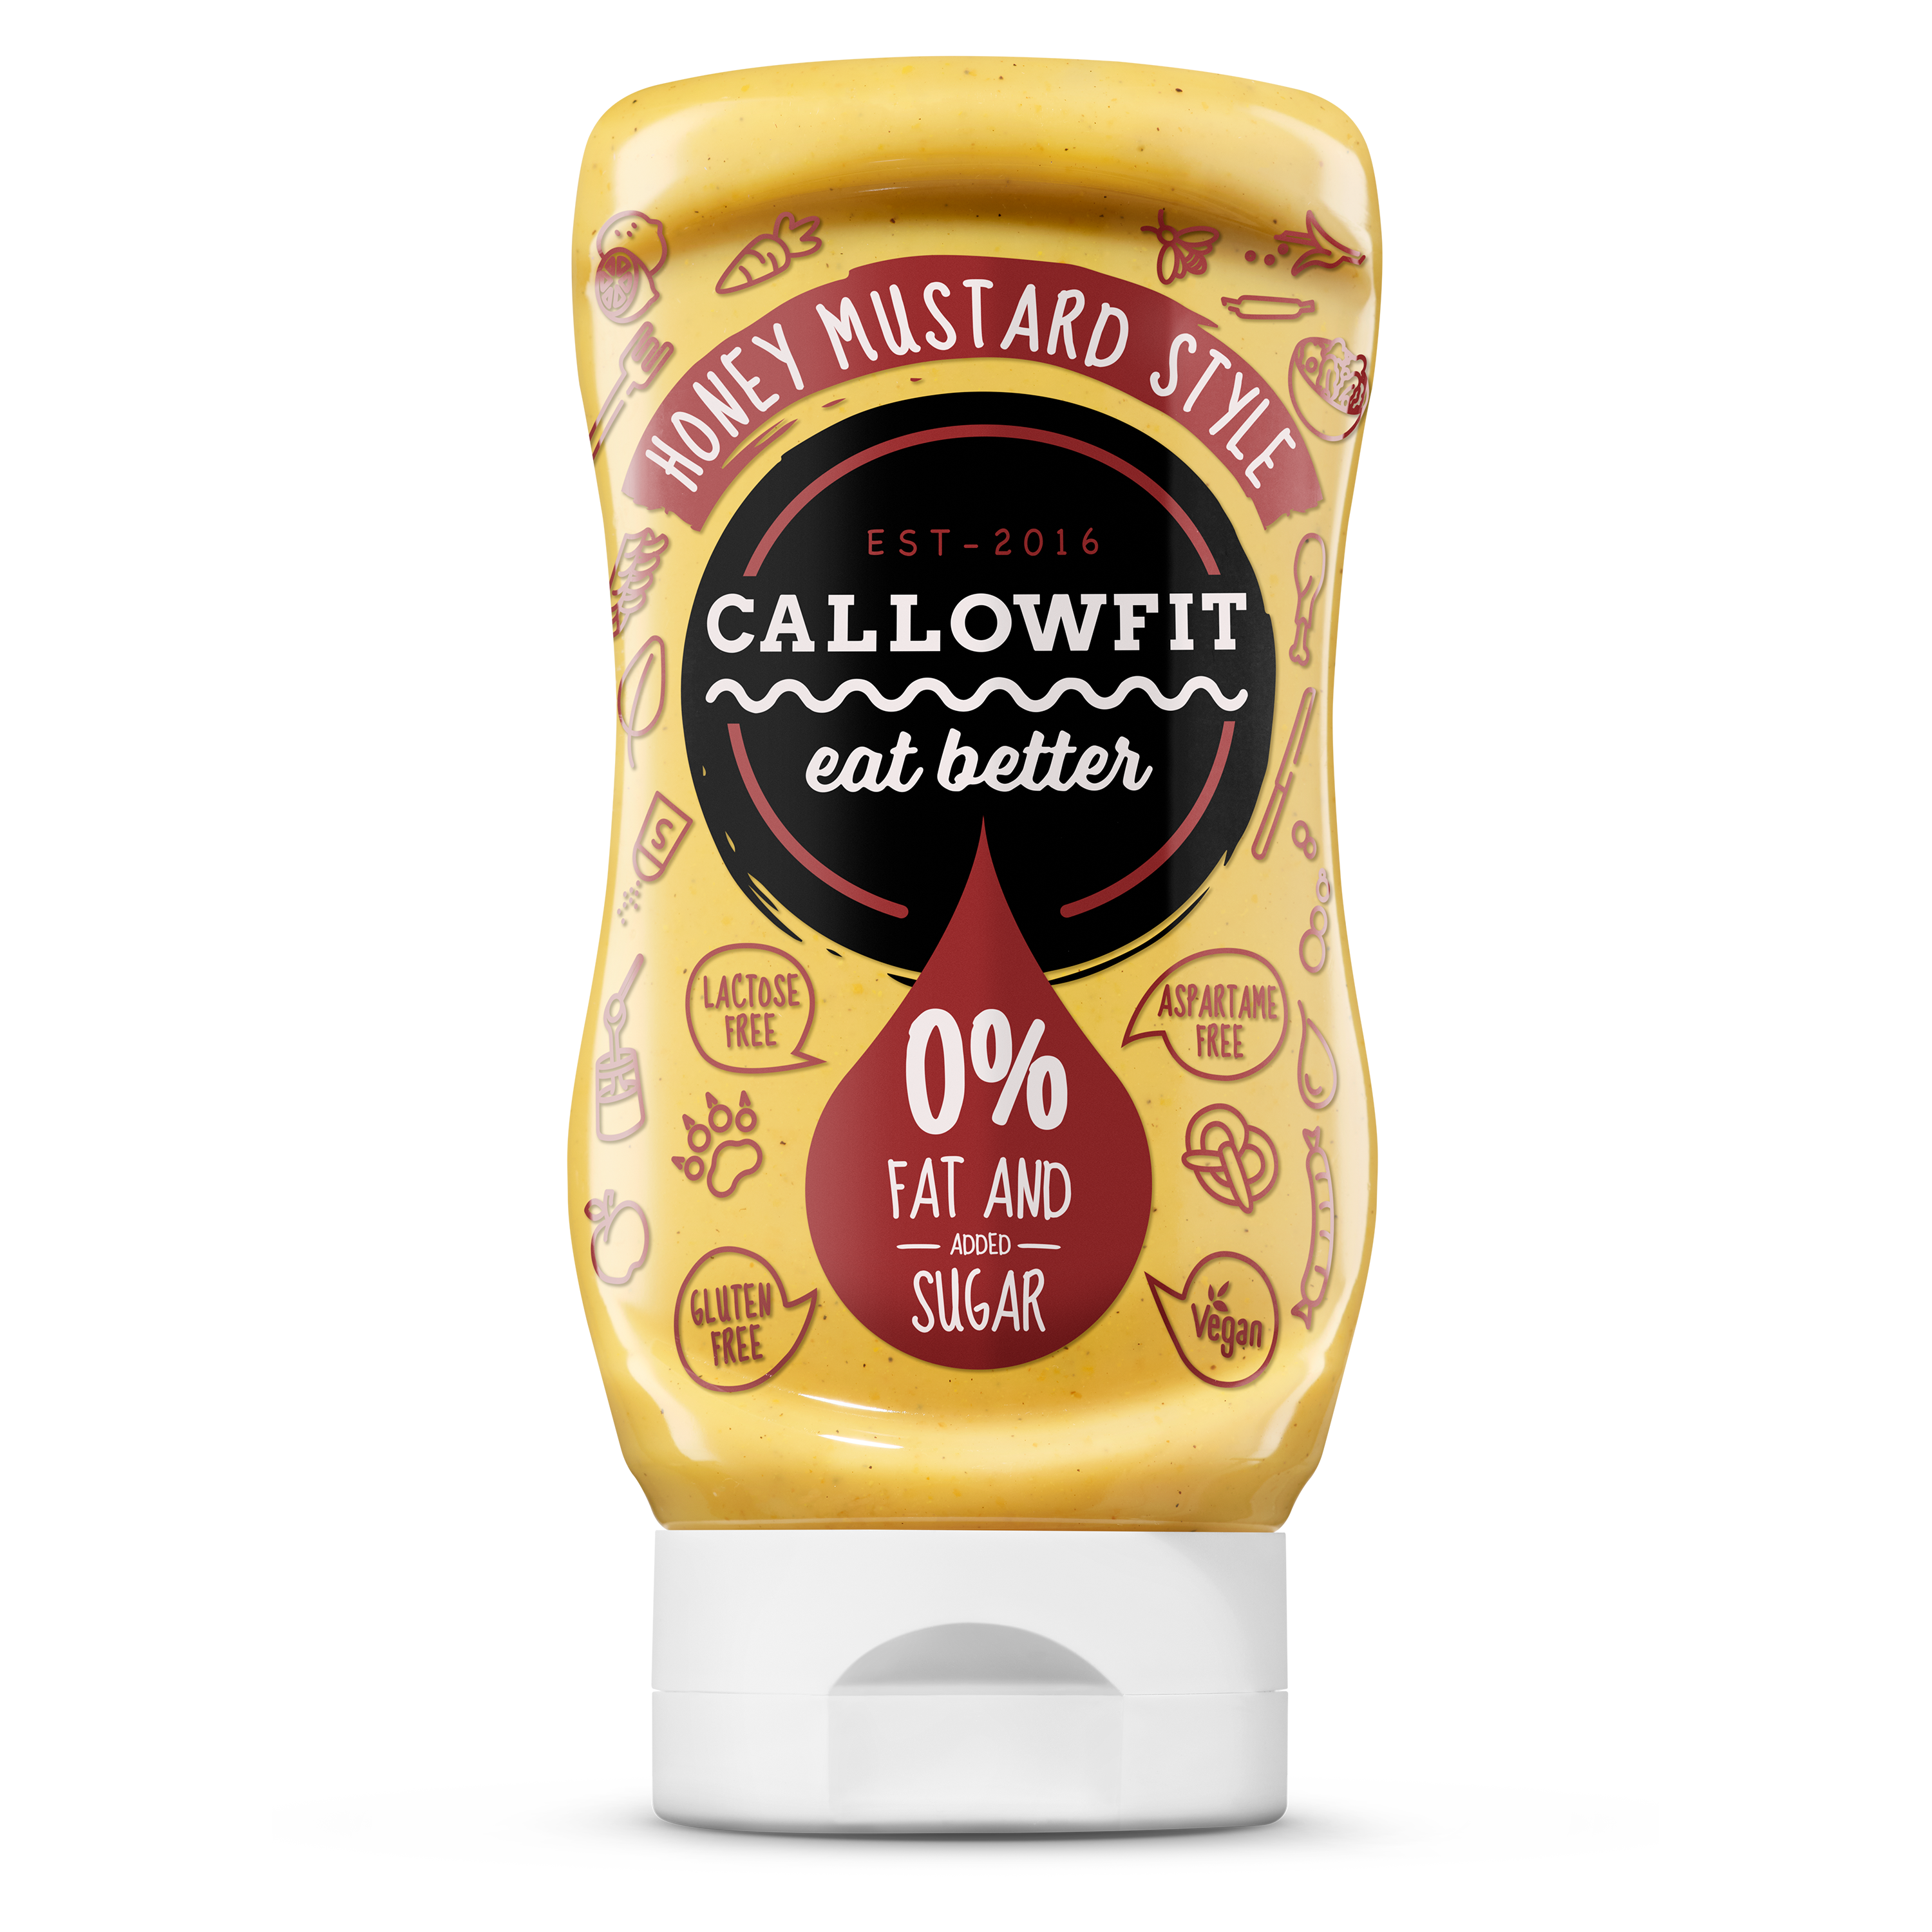 CALLOWFIT Sauce im Geschmack Honey Mustard mit 0% Fett und Zucker in einer Tube mit bunten Aufdruck.